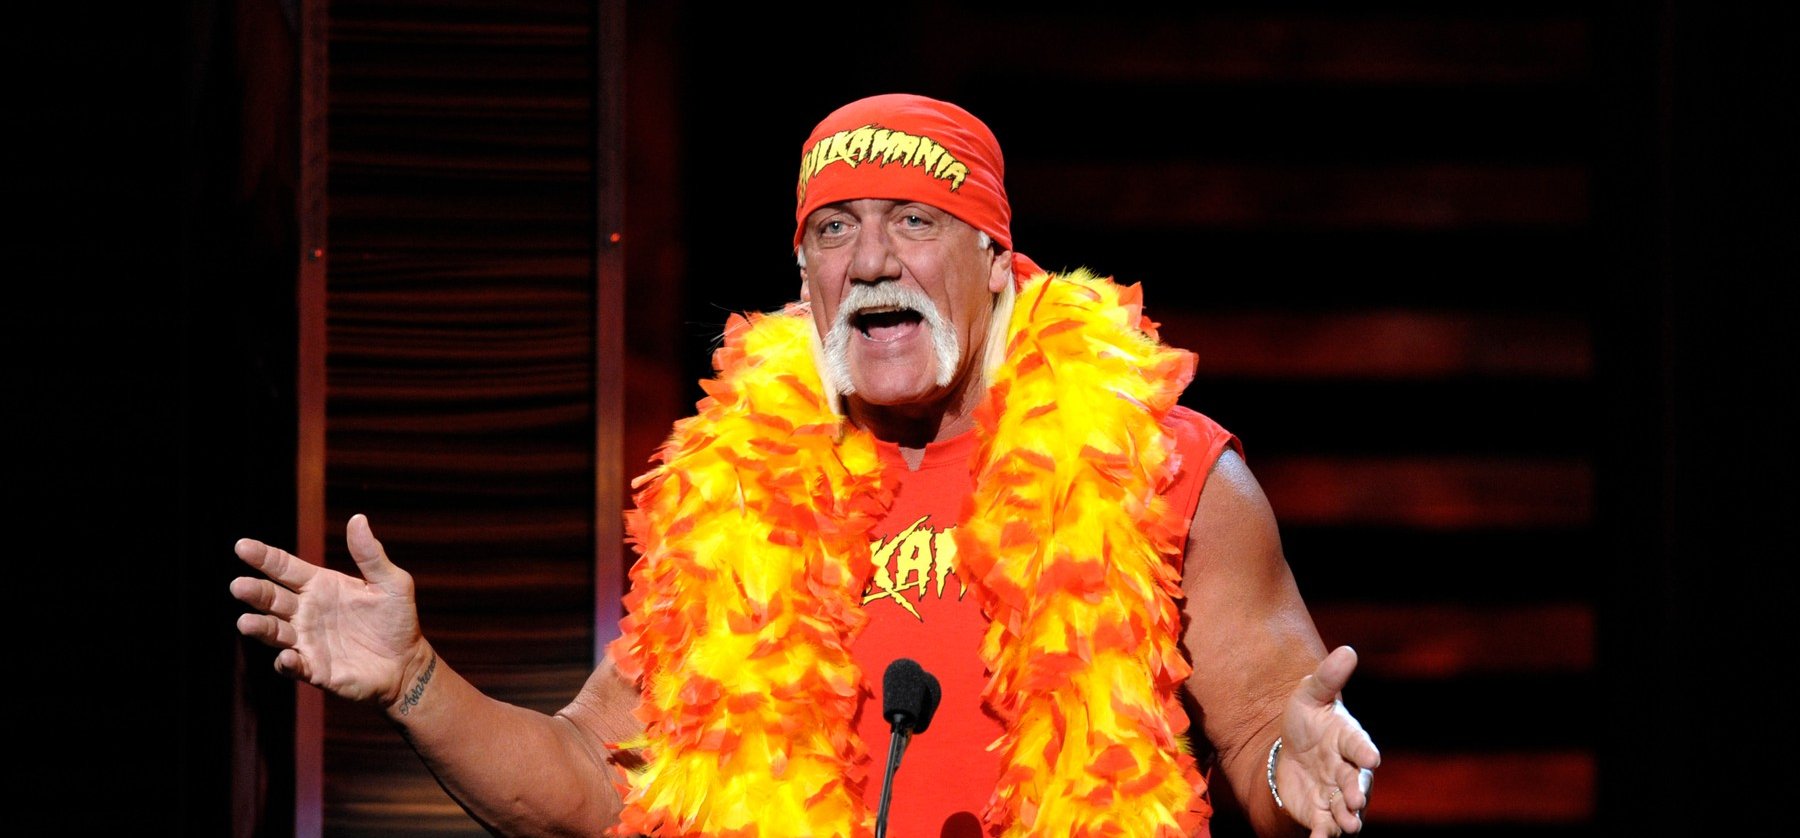 Így néz ki a bajszos pankrátor, Hulk Hogan csúcsbombázó, profi birkózó lánya, Brooke Hogan - videó